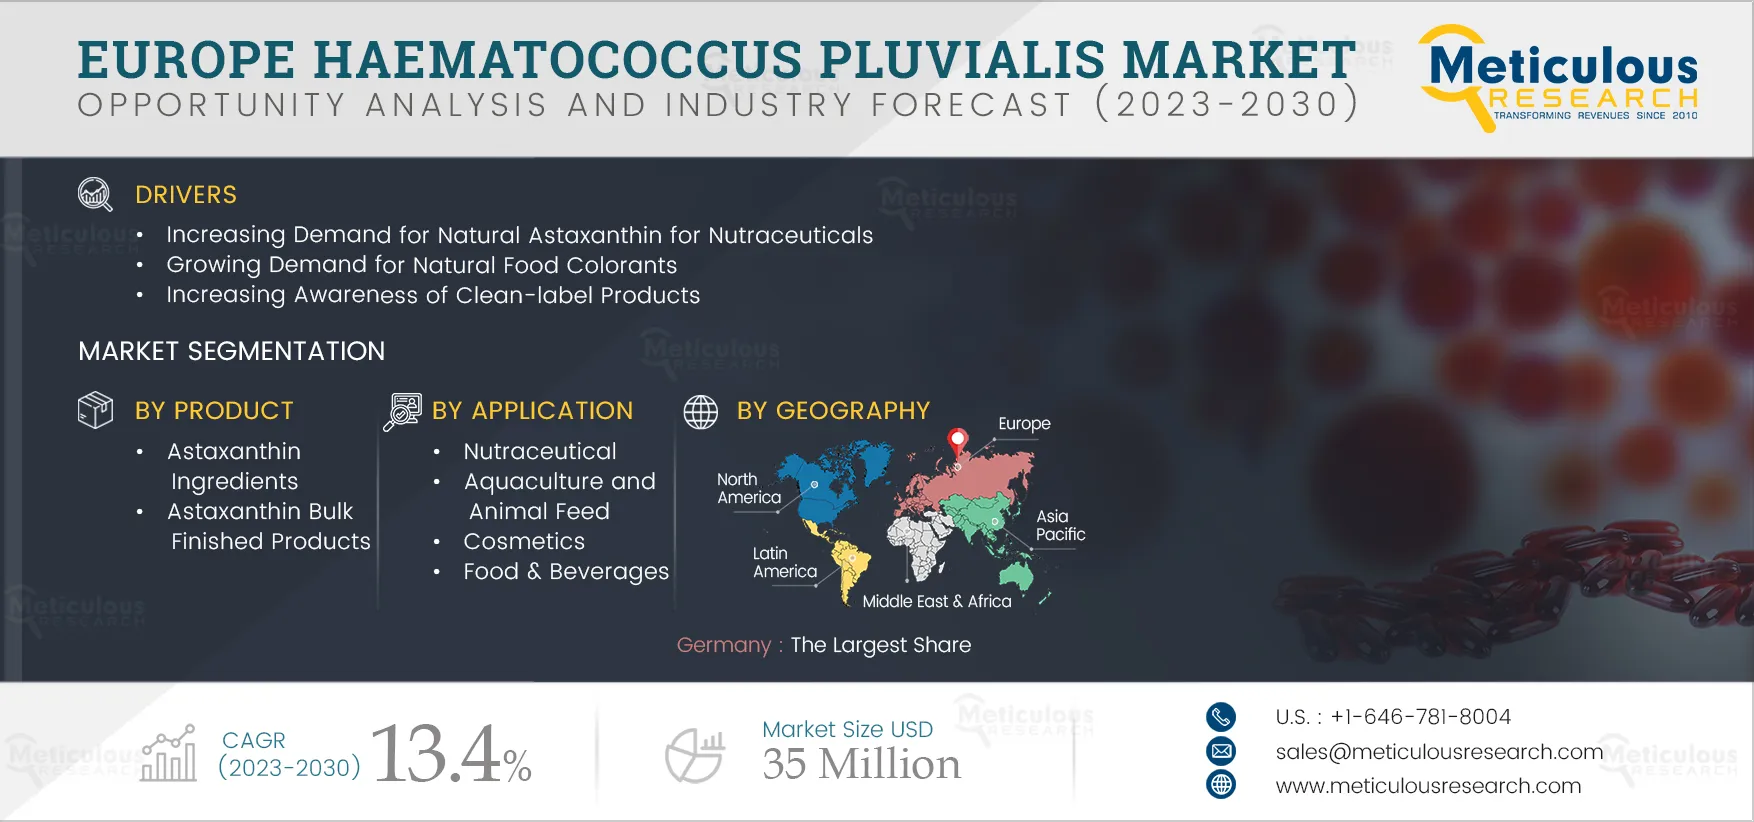 Europe Haematococcus Pluvialis Market